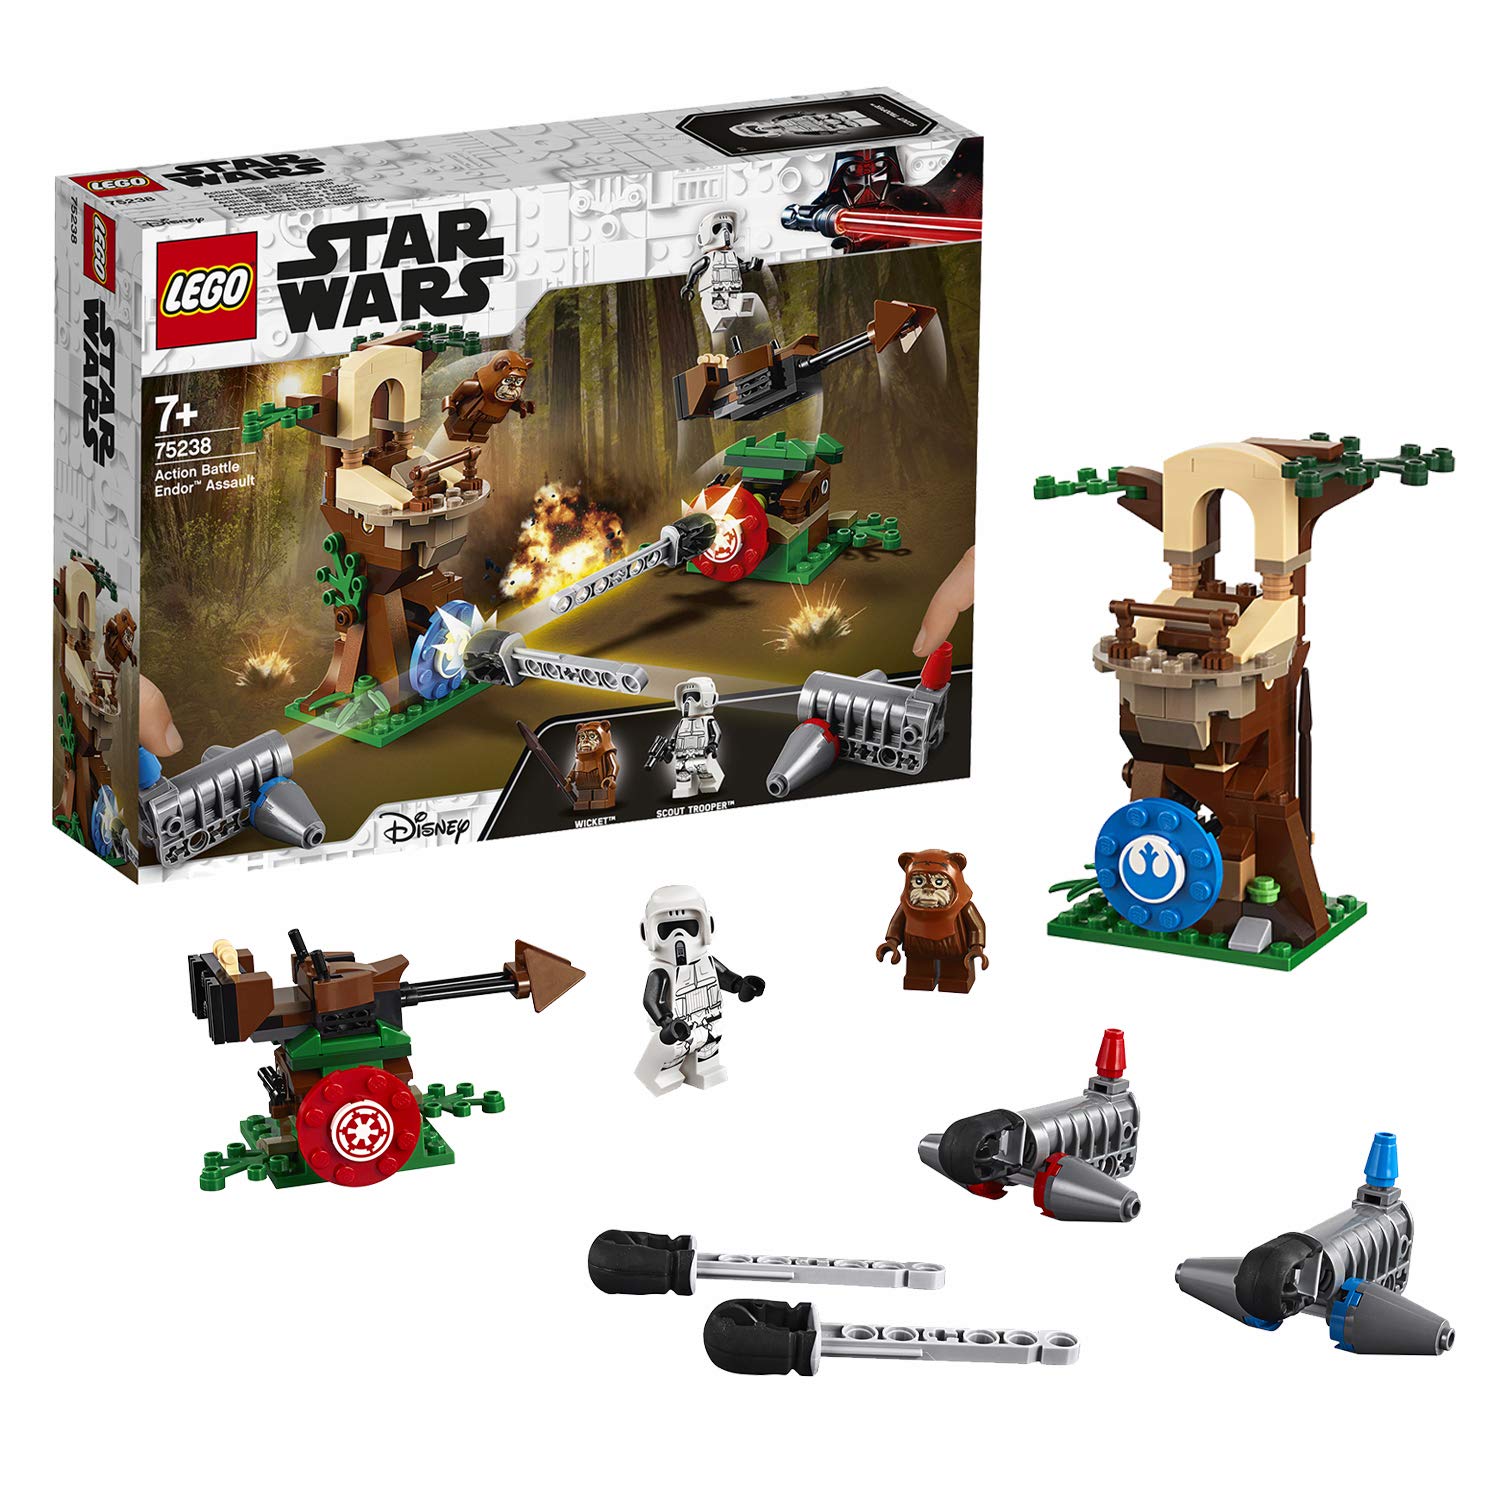 Lego Star Wars 75238 Action Battle Endor Attack Construction Kit